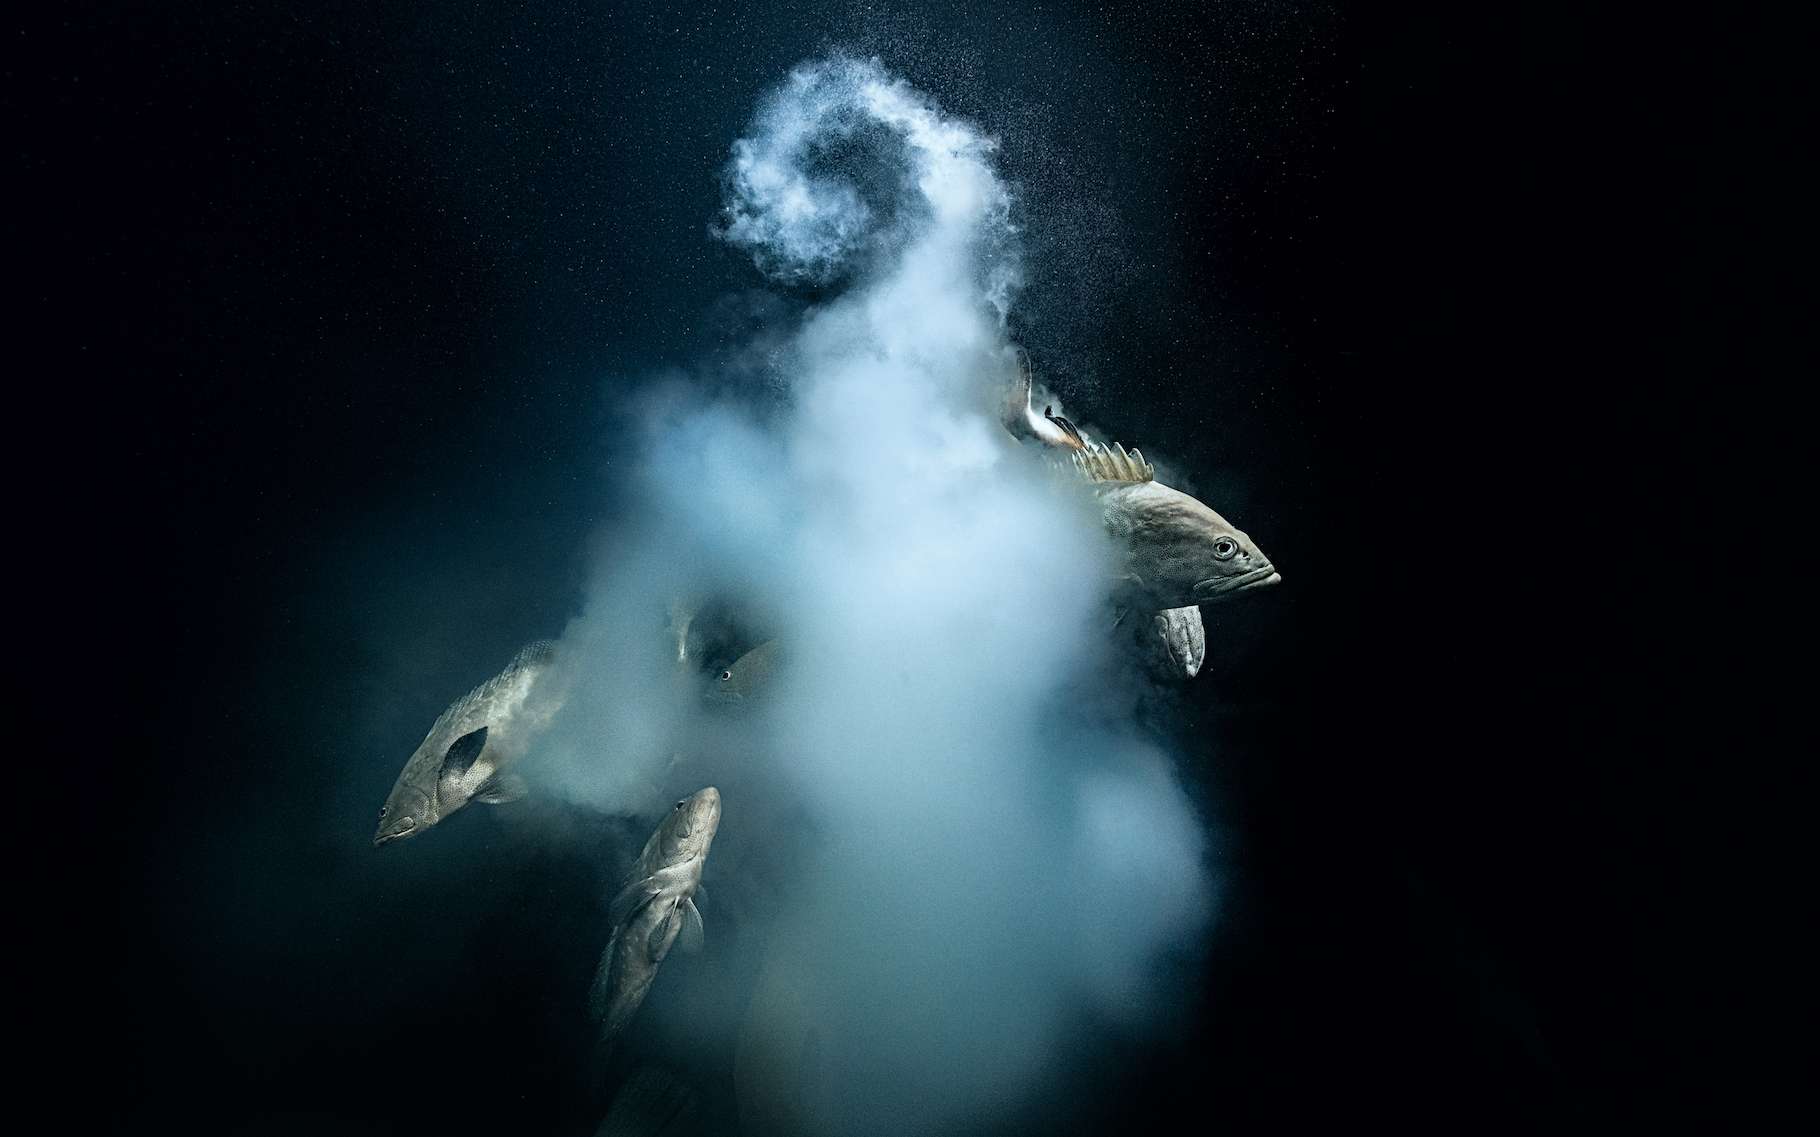 Le photographe et plongeur Laurent Ballesta remporte le grand prix du prestigieux Wildlife Photographer of the Year !